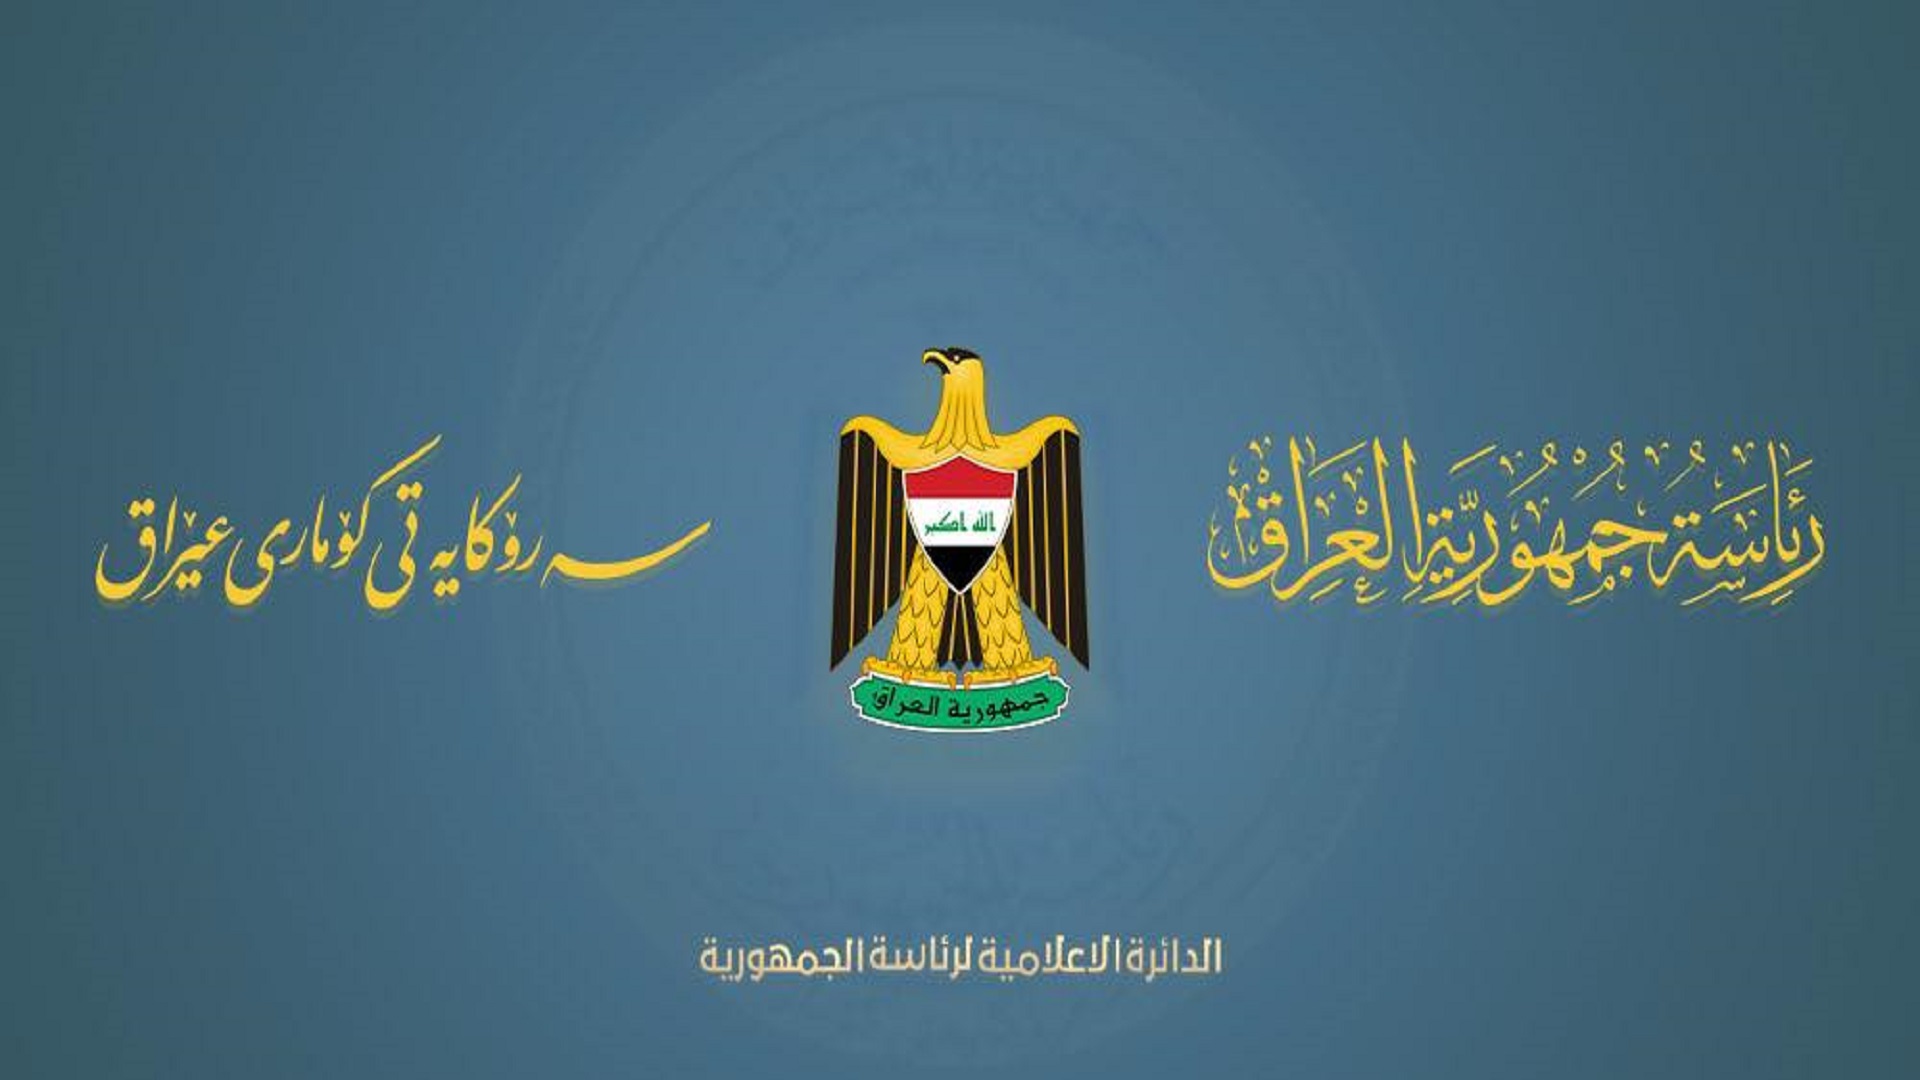 رئاسة جمهورية العراق تصدربيانا حول الهجوم على مطار عربت الزراعي 